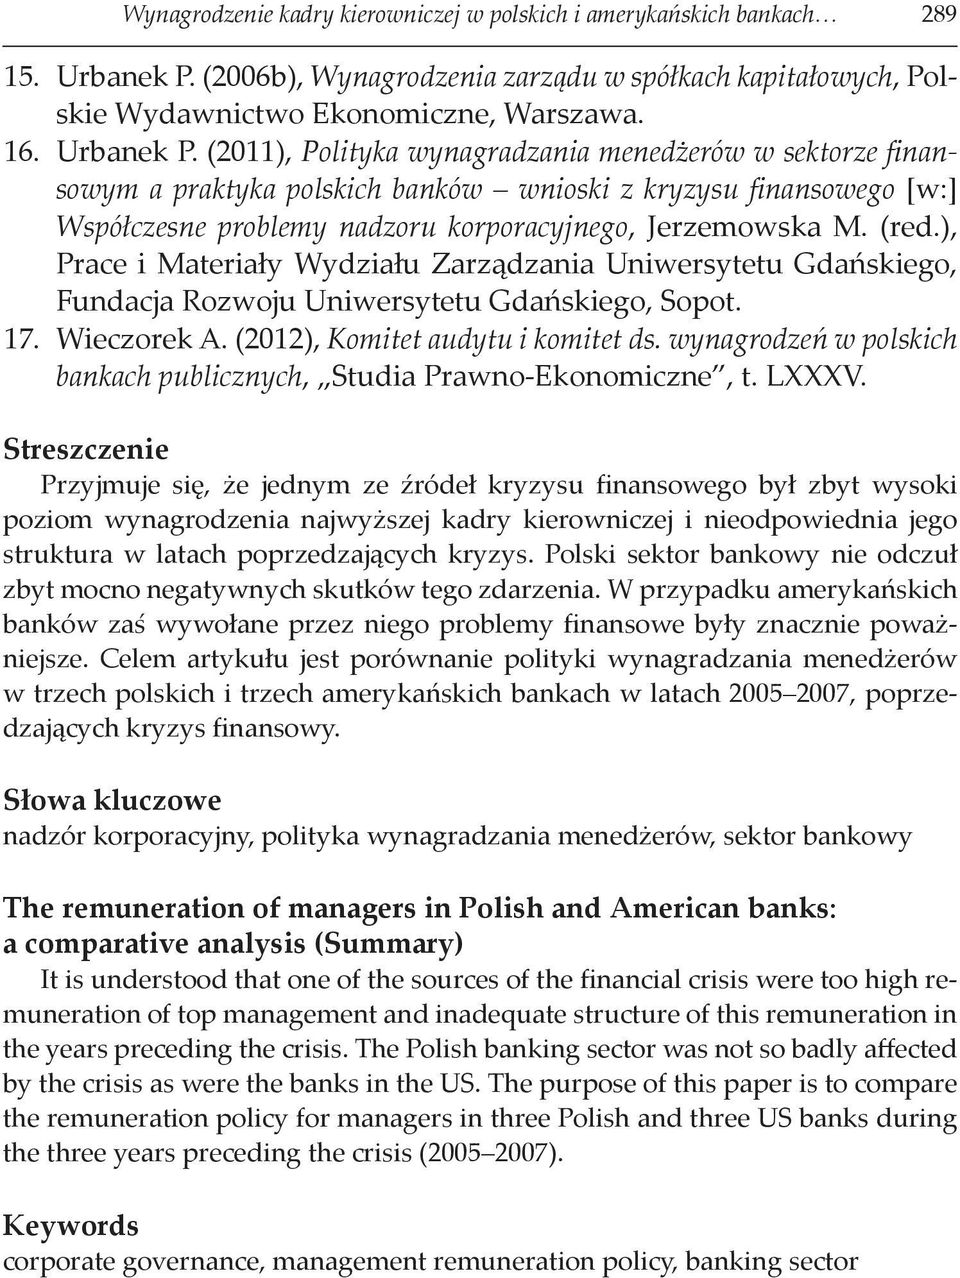 (2011), Polityka wynagradzania menedżerów w sektorze finansowym a praktyka polskich banków wnioski z kryzysu finansowego [w:] Współczesne problemy nadzoru korporacyjnego, Jerzemowska M. (red.